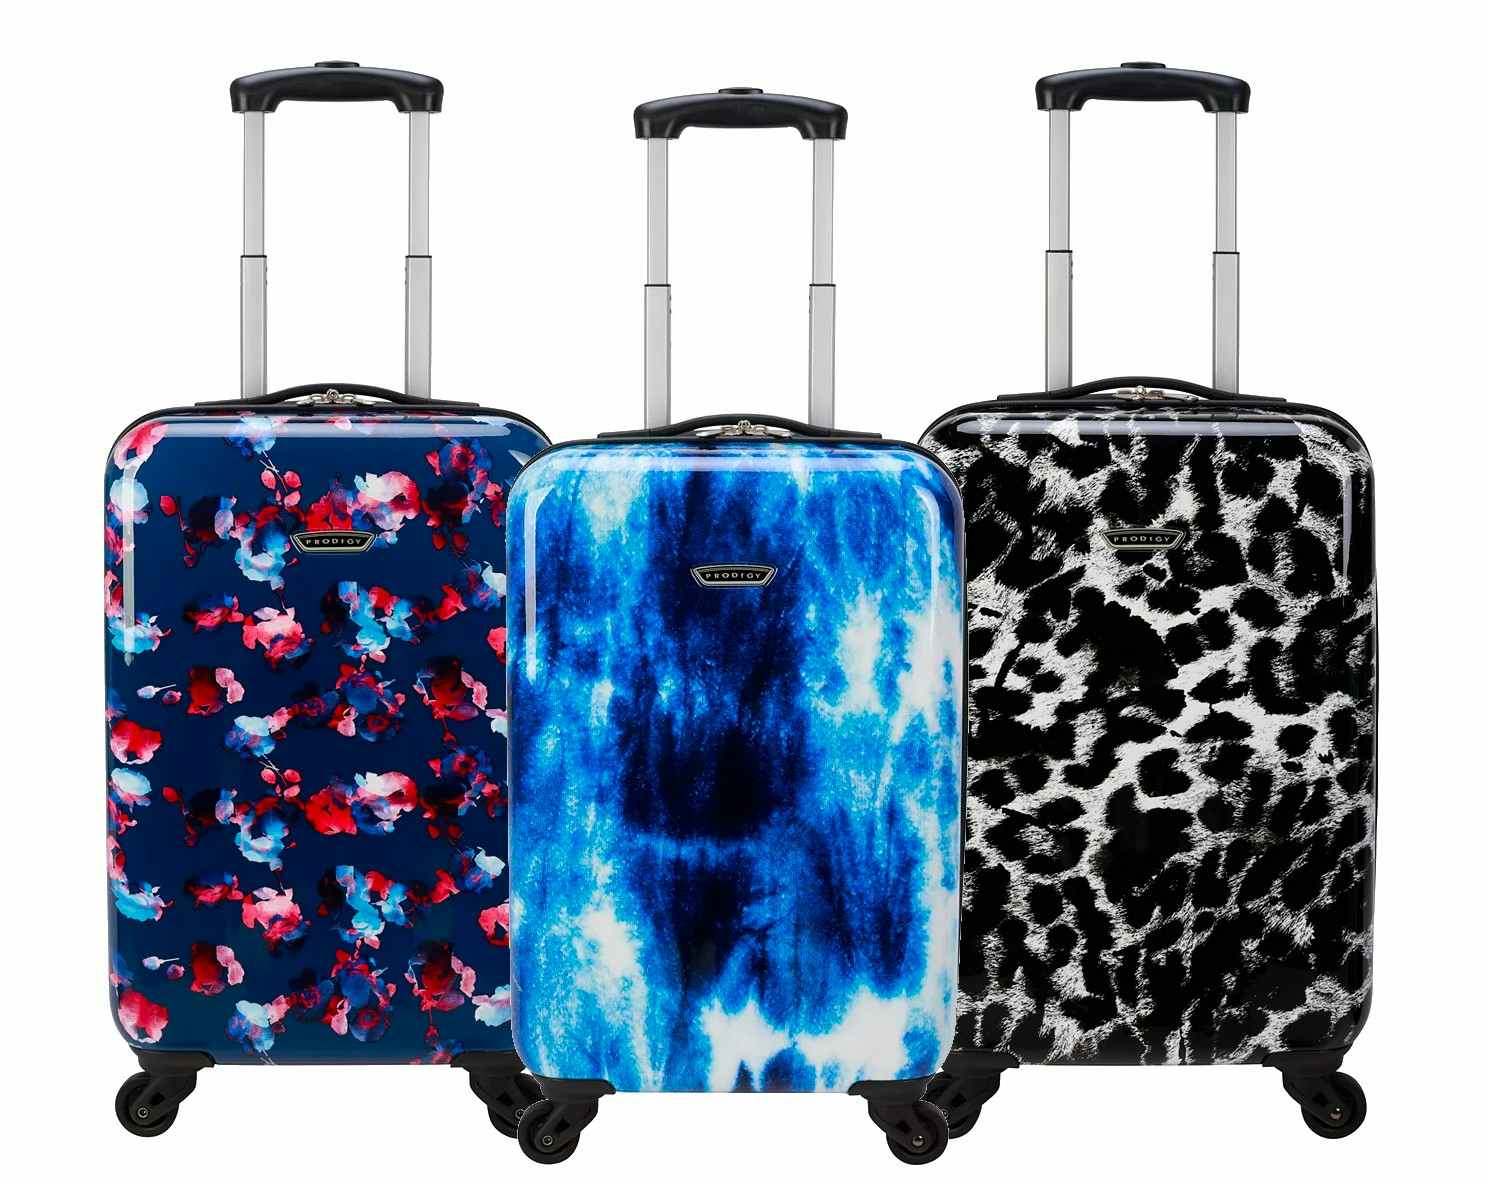 kohl-prodigy-luggage-2021-2